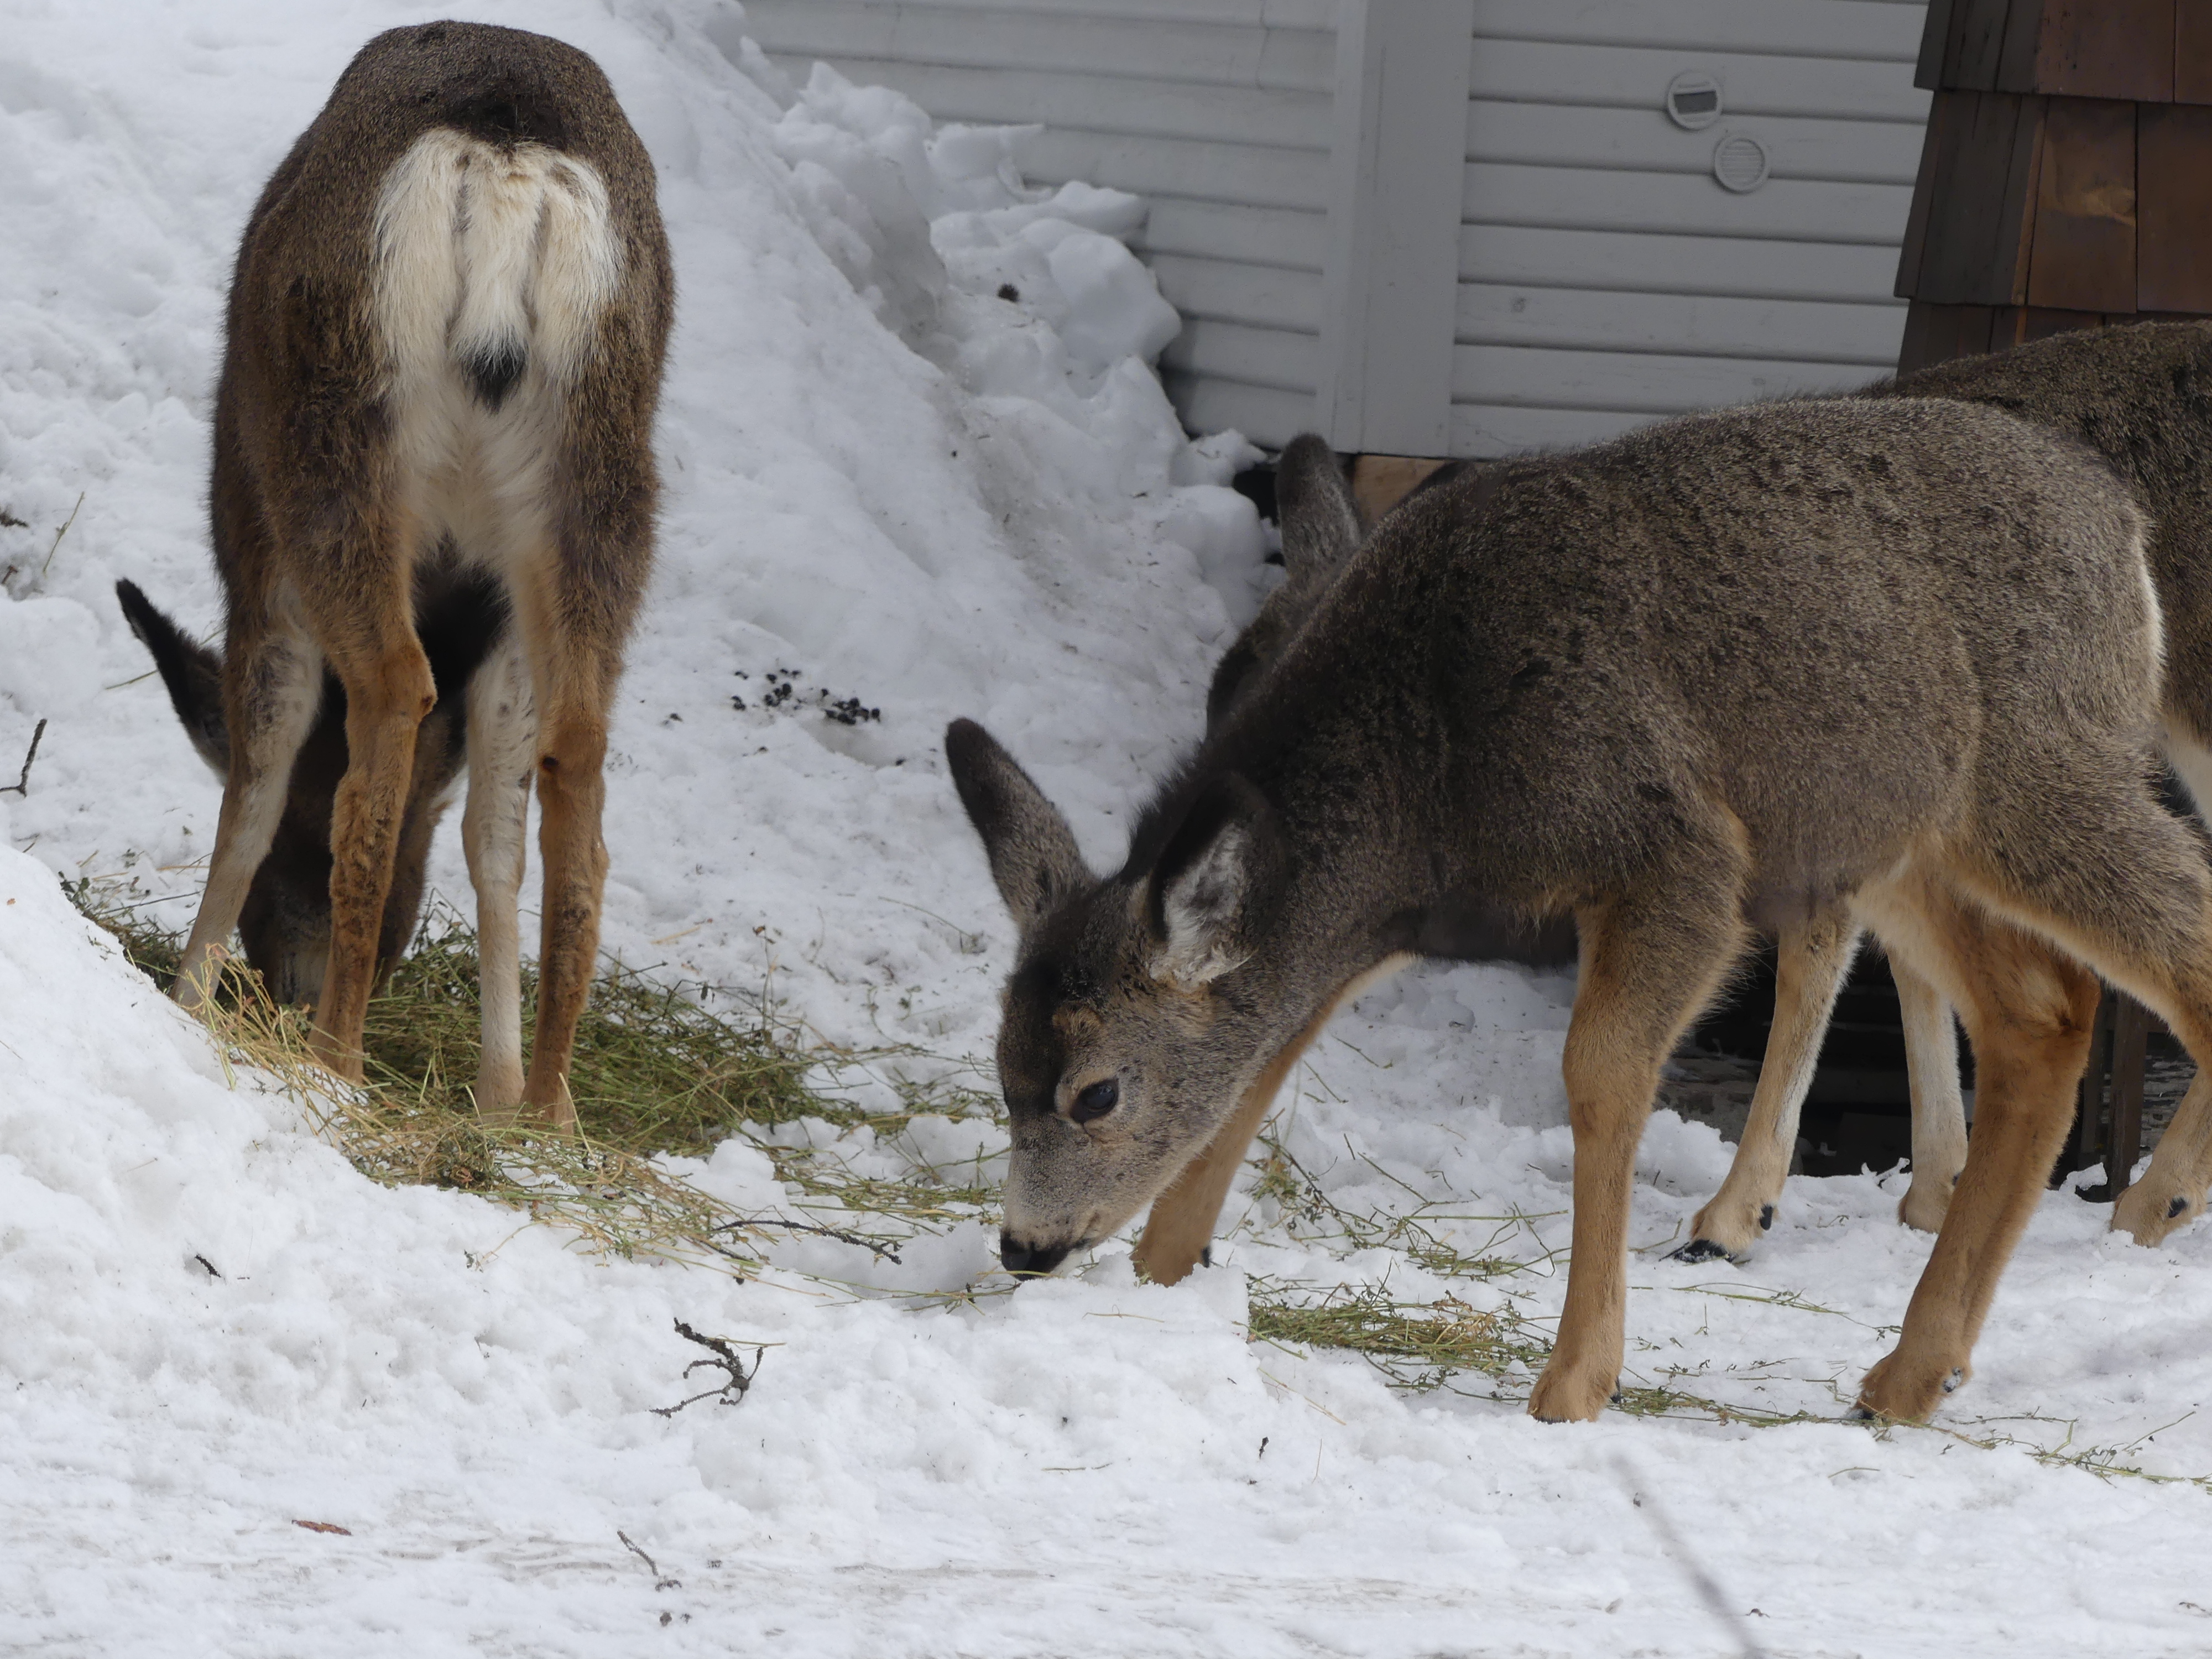 feeding neighborhood deer during winter in mccall